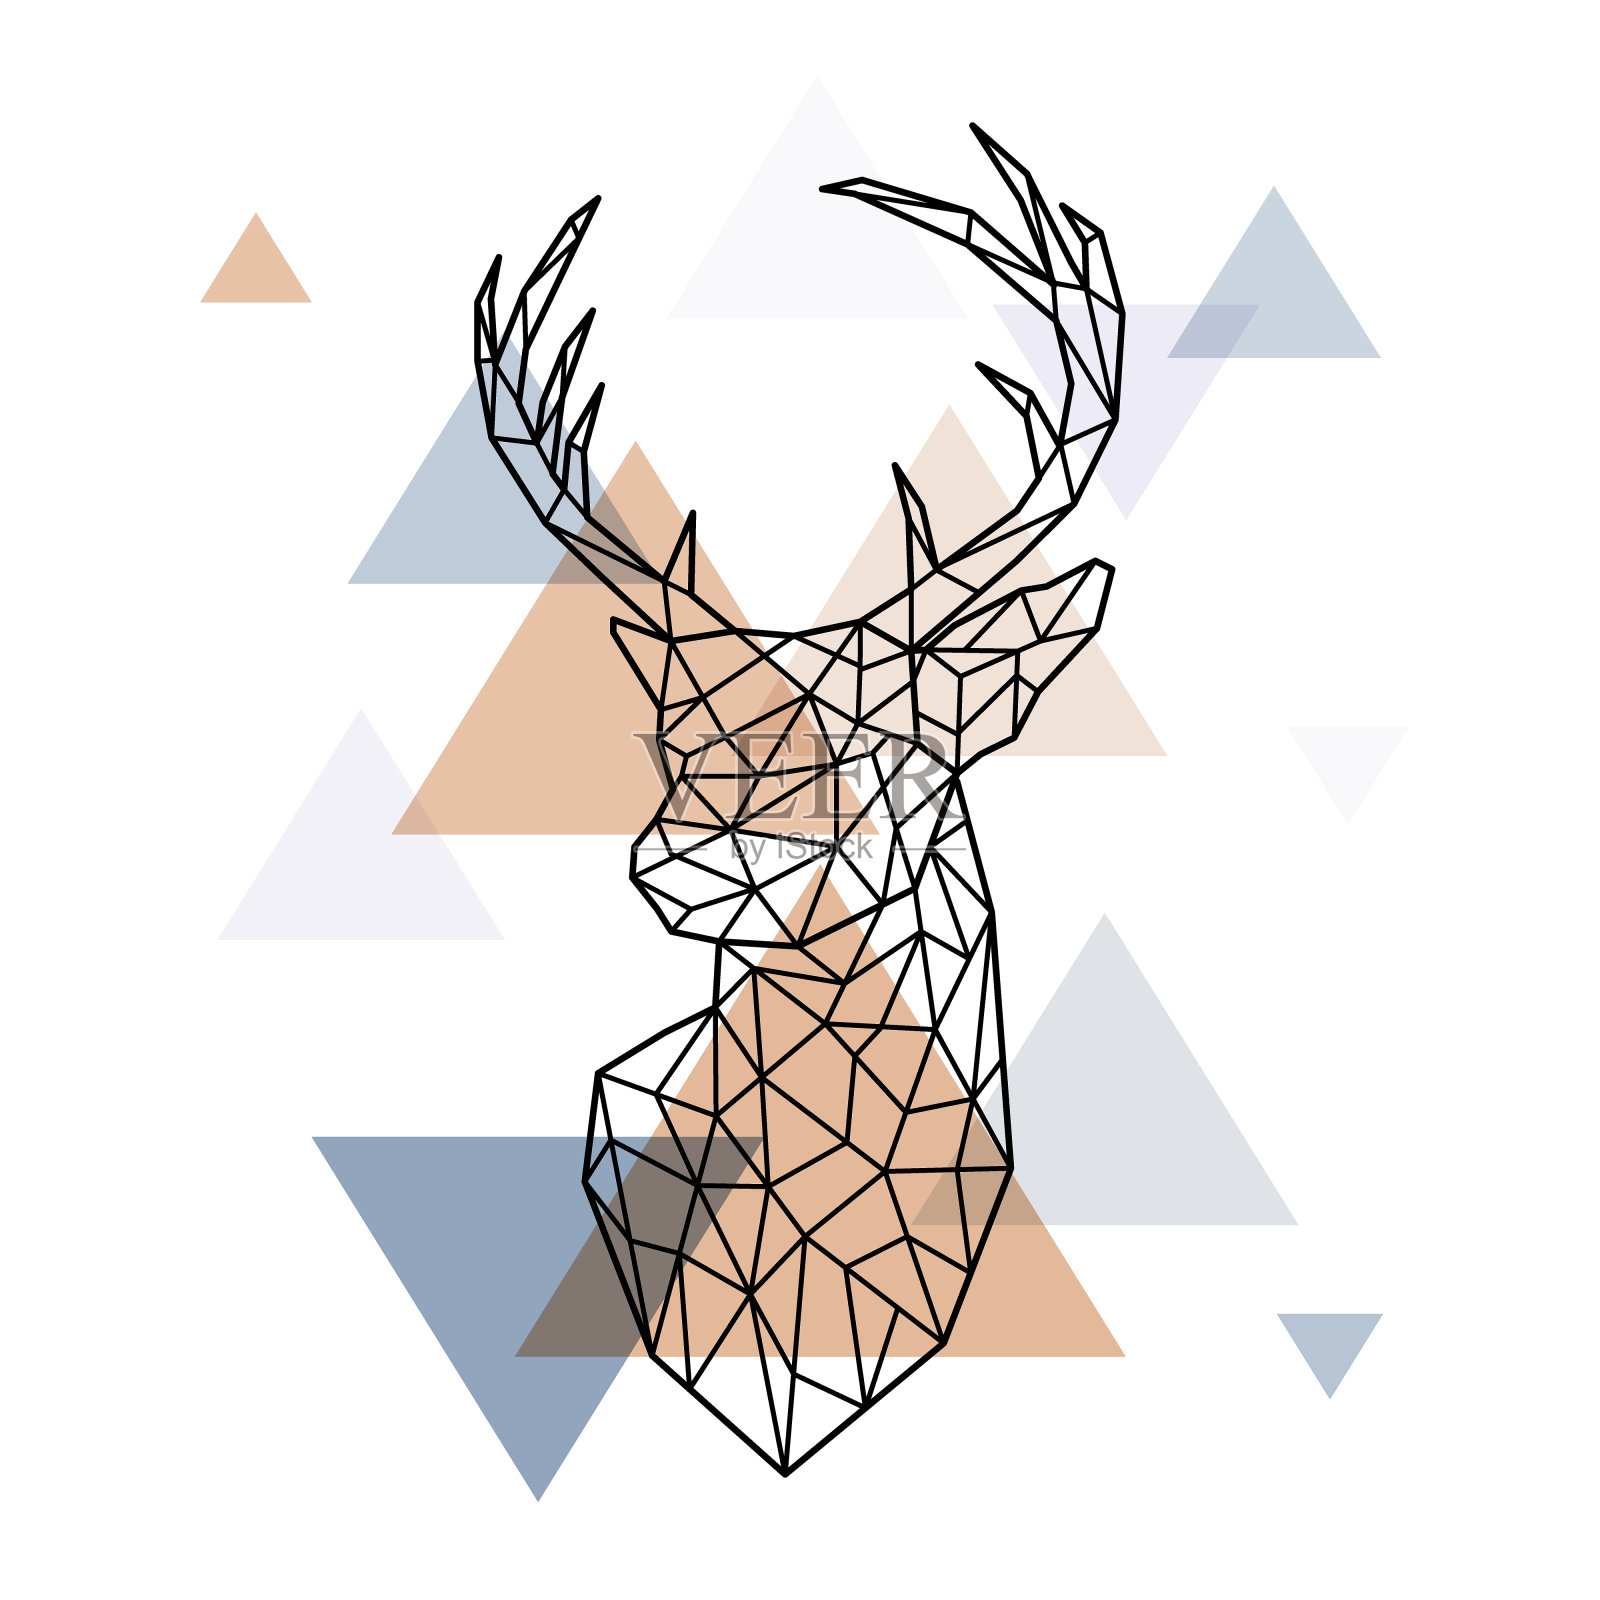 斯堪的纳维亚鹿的几何头部。多边形的风格。北欧风格。设计元素图片